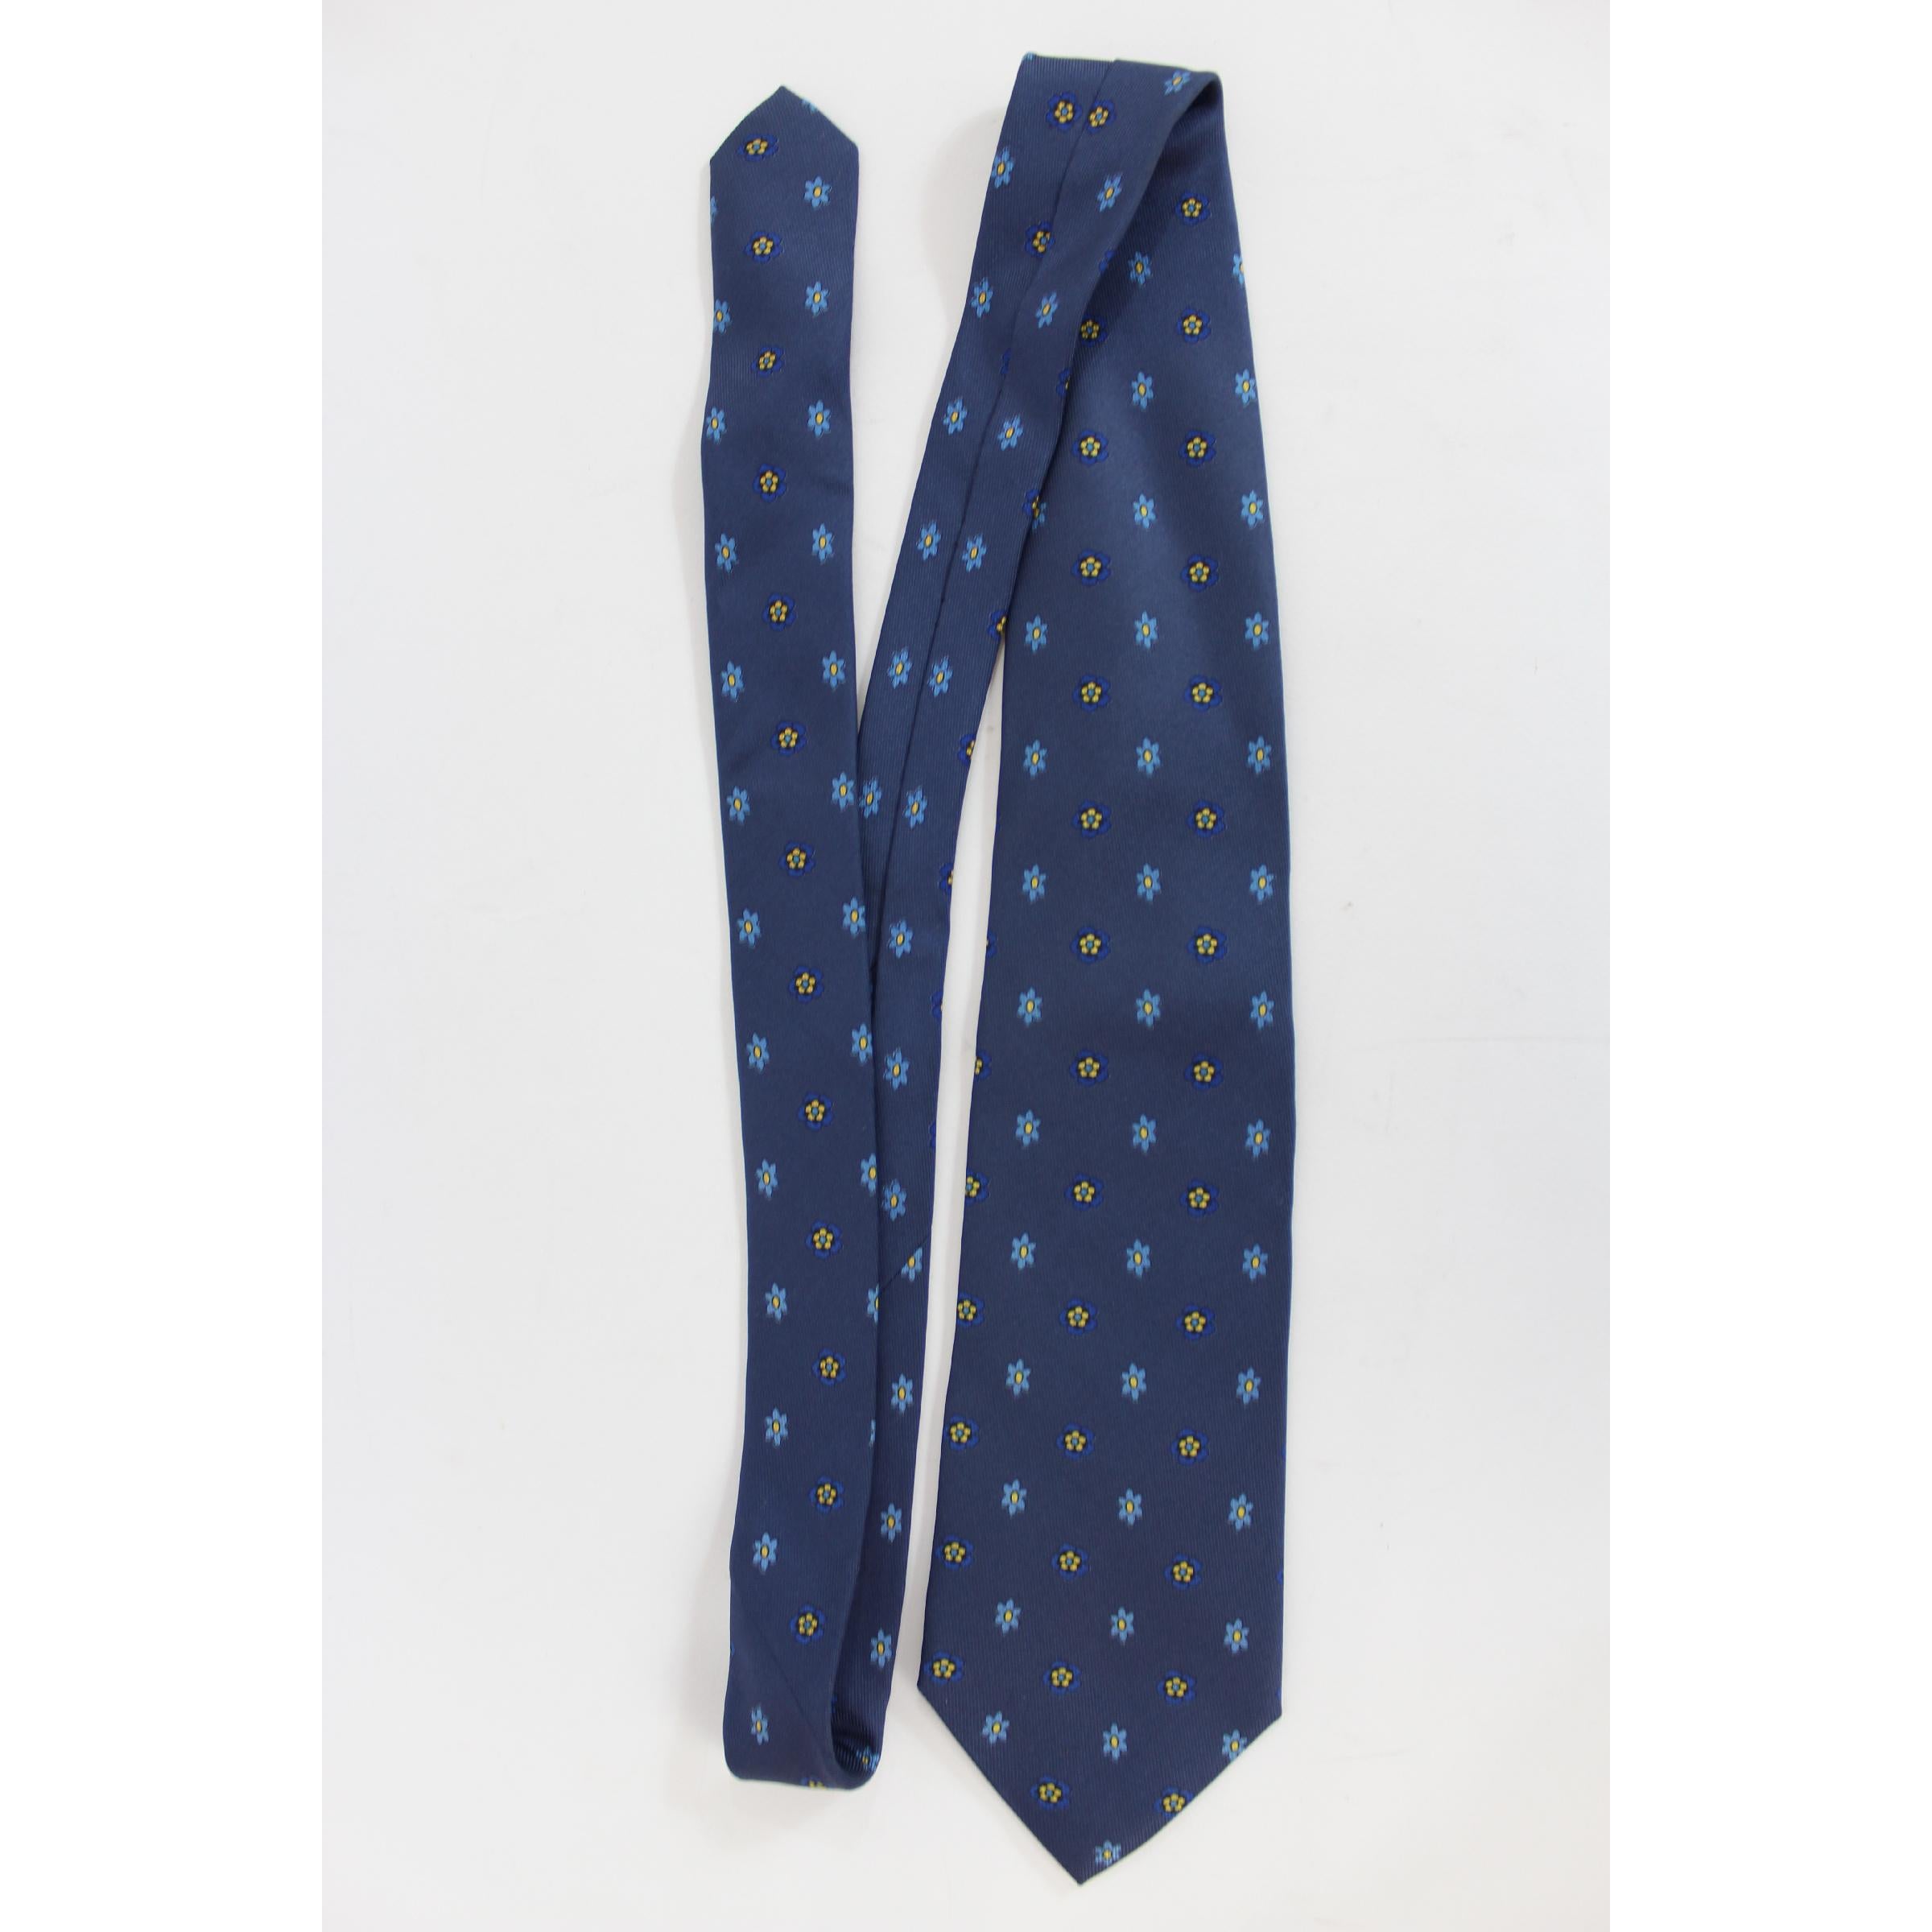 Cravate Etro vintage des années 1990, couleur bleue avec motif floral, 100% soie. Fabriqué en Italie.

Longueur : 145 cm
Largeur : 10 cm